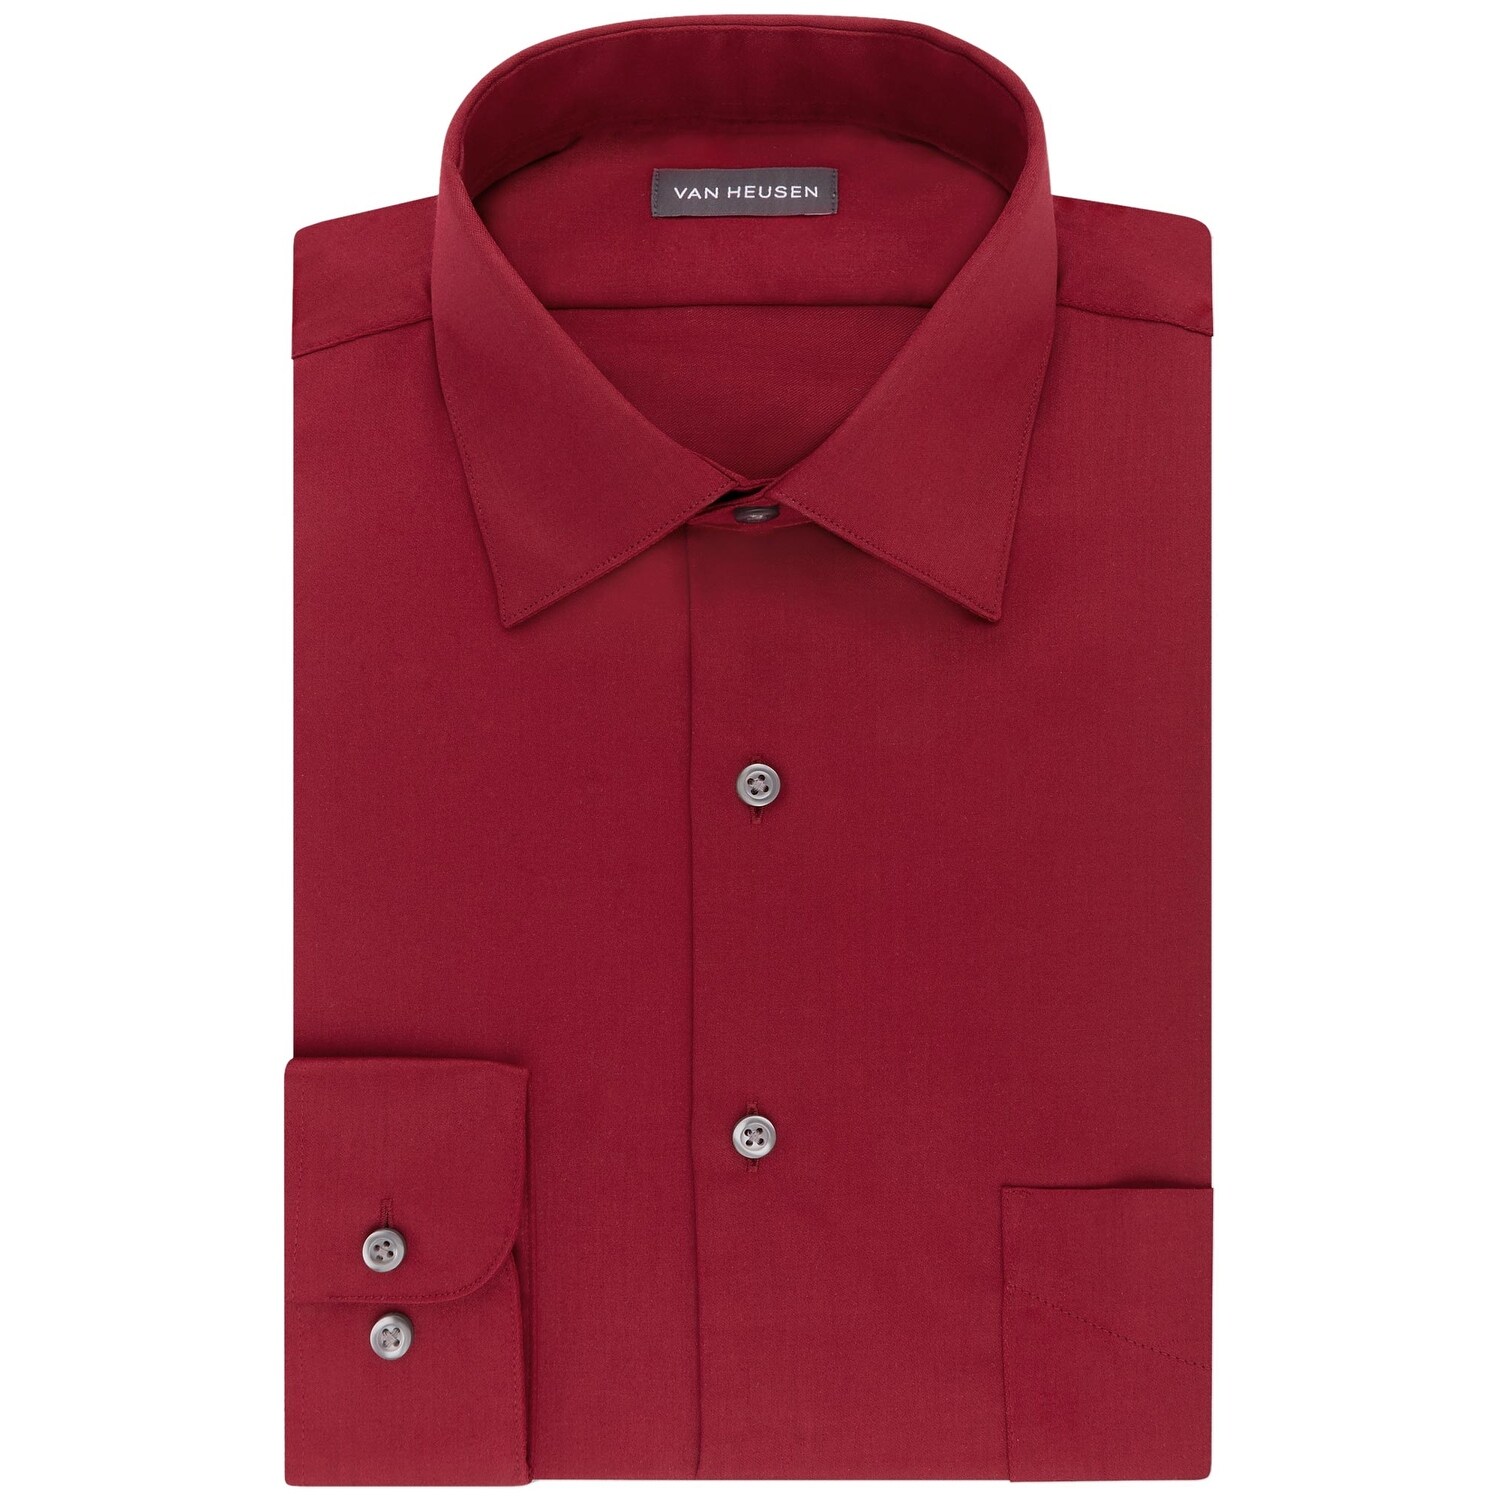 New Van Heusen Men's Athletic-Fit Lux Sateen Spread-Collar Dress Shirt MSRP $45